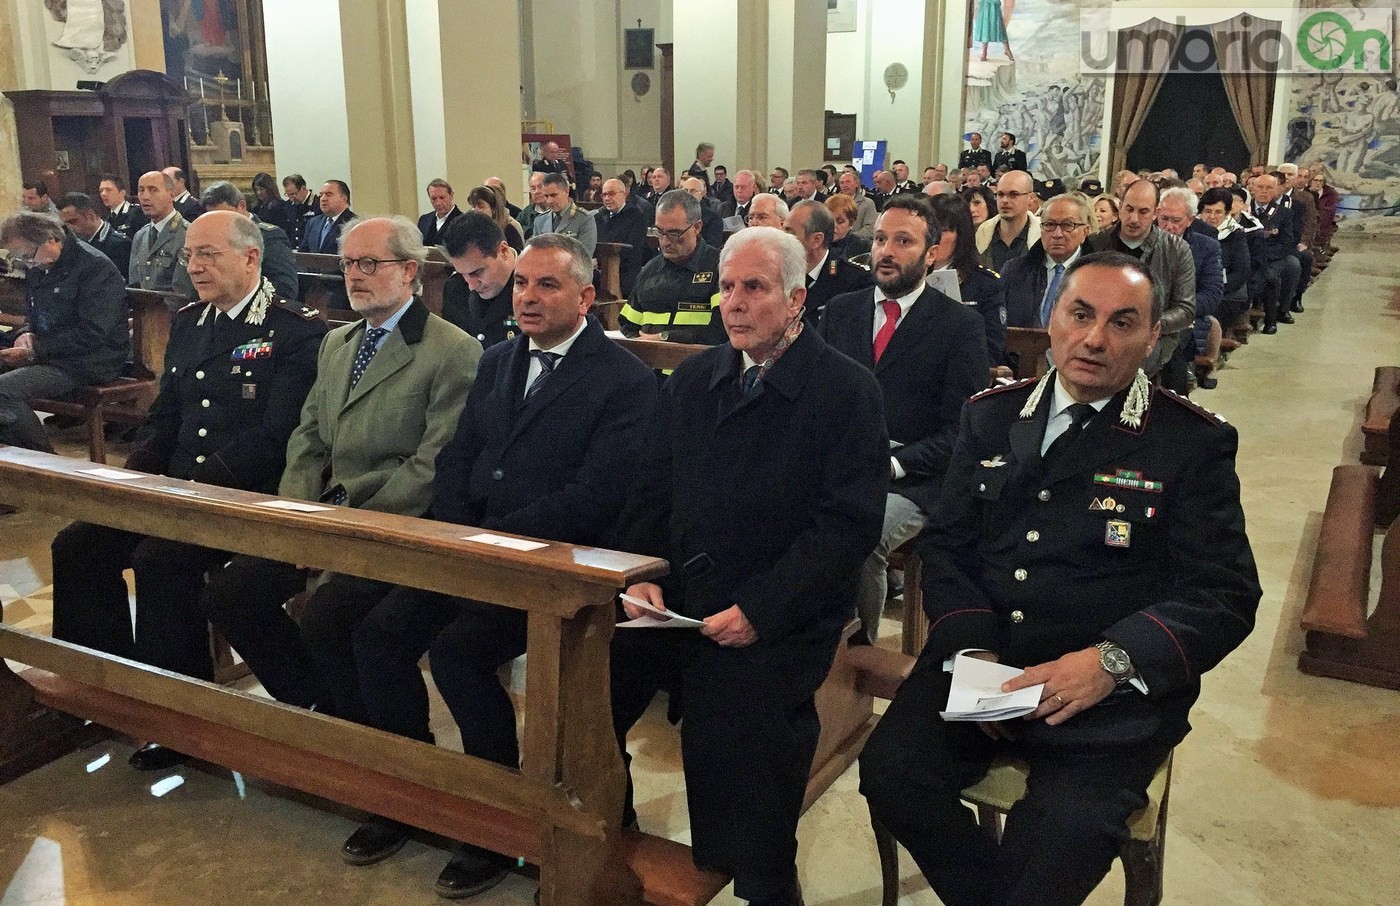 Virgo-Fidelis-carabinieri-Terni-in-cattedrale-21-novembre-2016-6